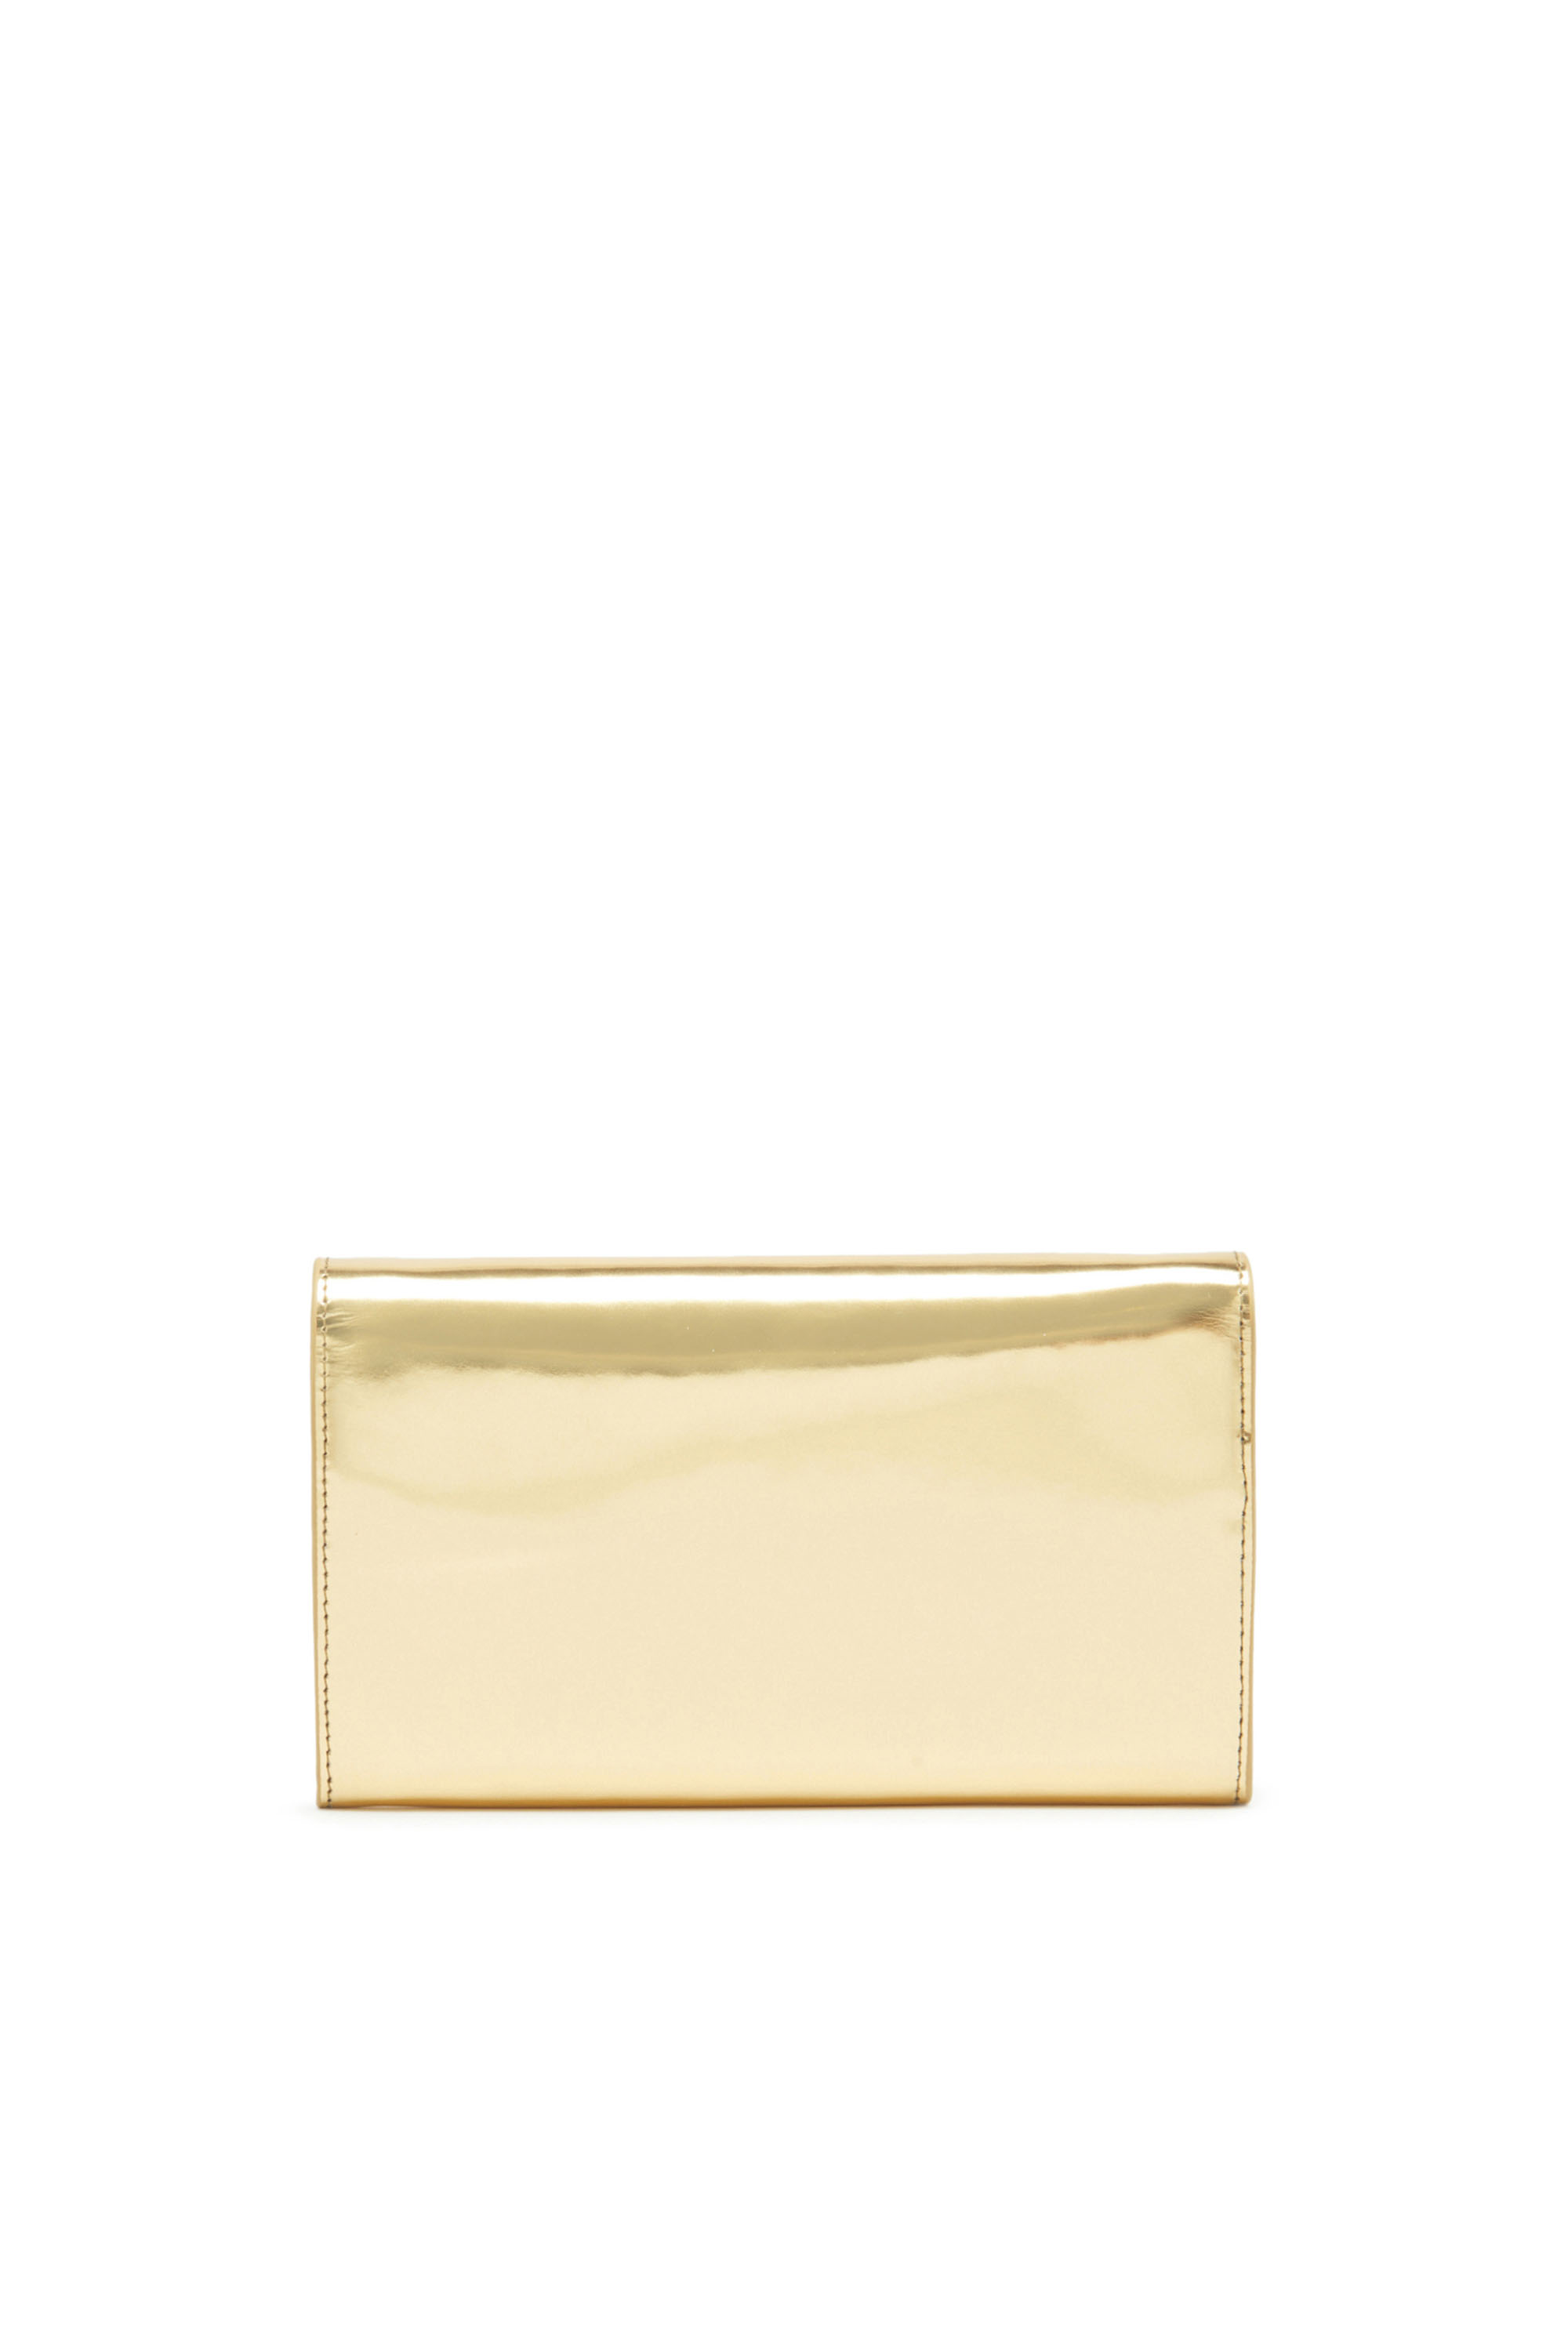 Diesel - LONG WALLET ZIP XXL, Woman Wallet purse in metallic leather in Oro - Image 2